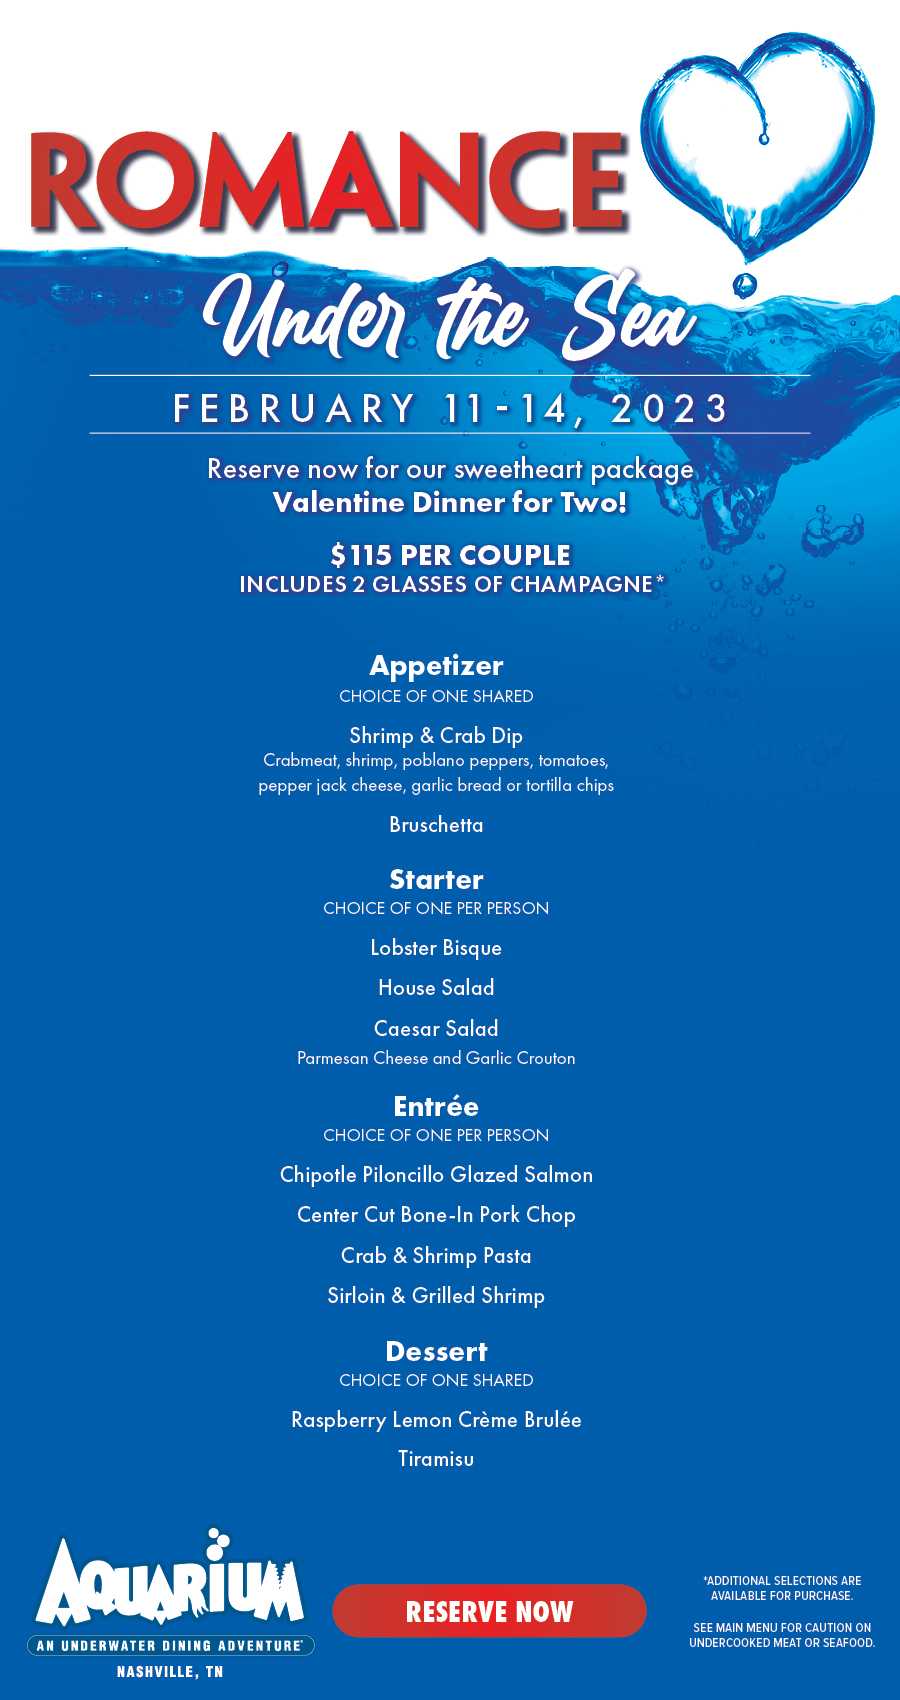 Aquarium Restaurant - Romance Under The Sea - February 11th - 14th